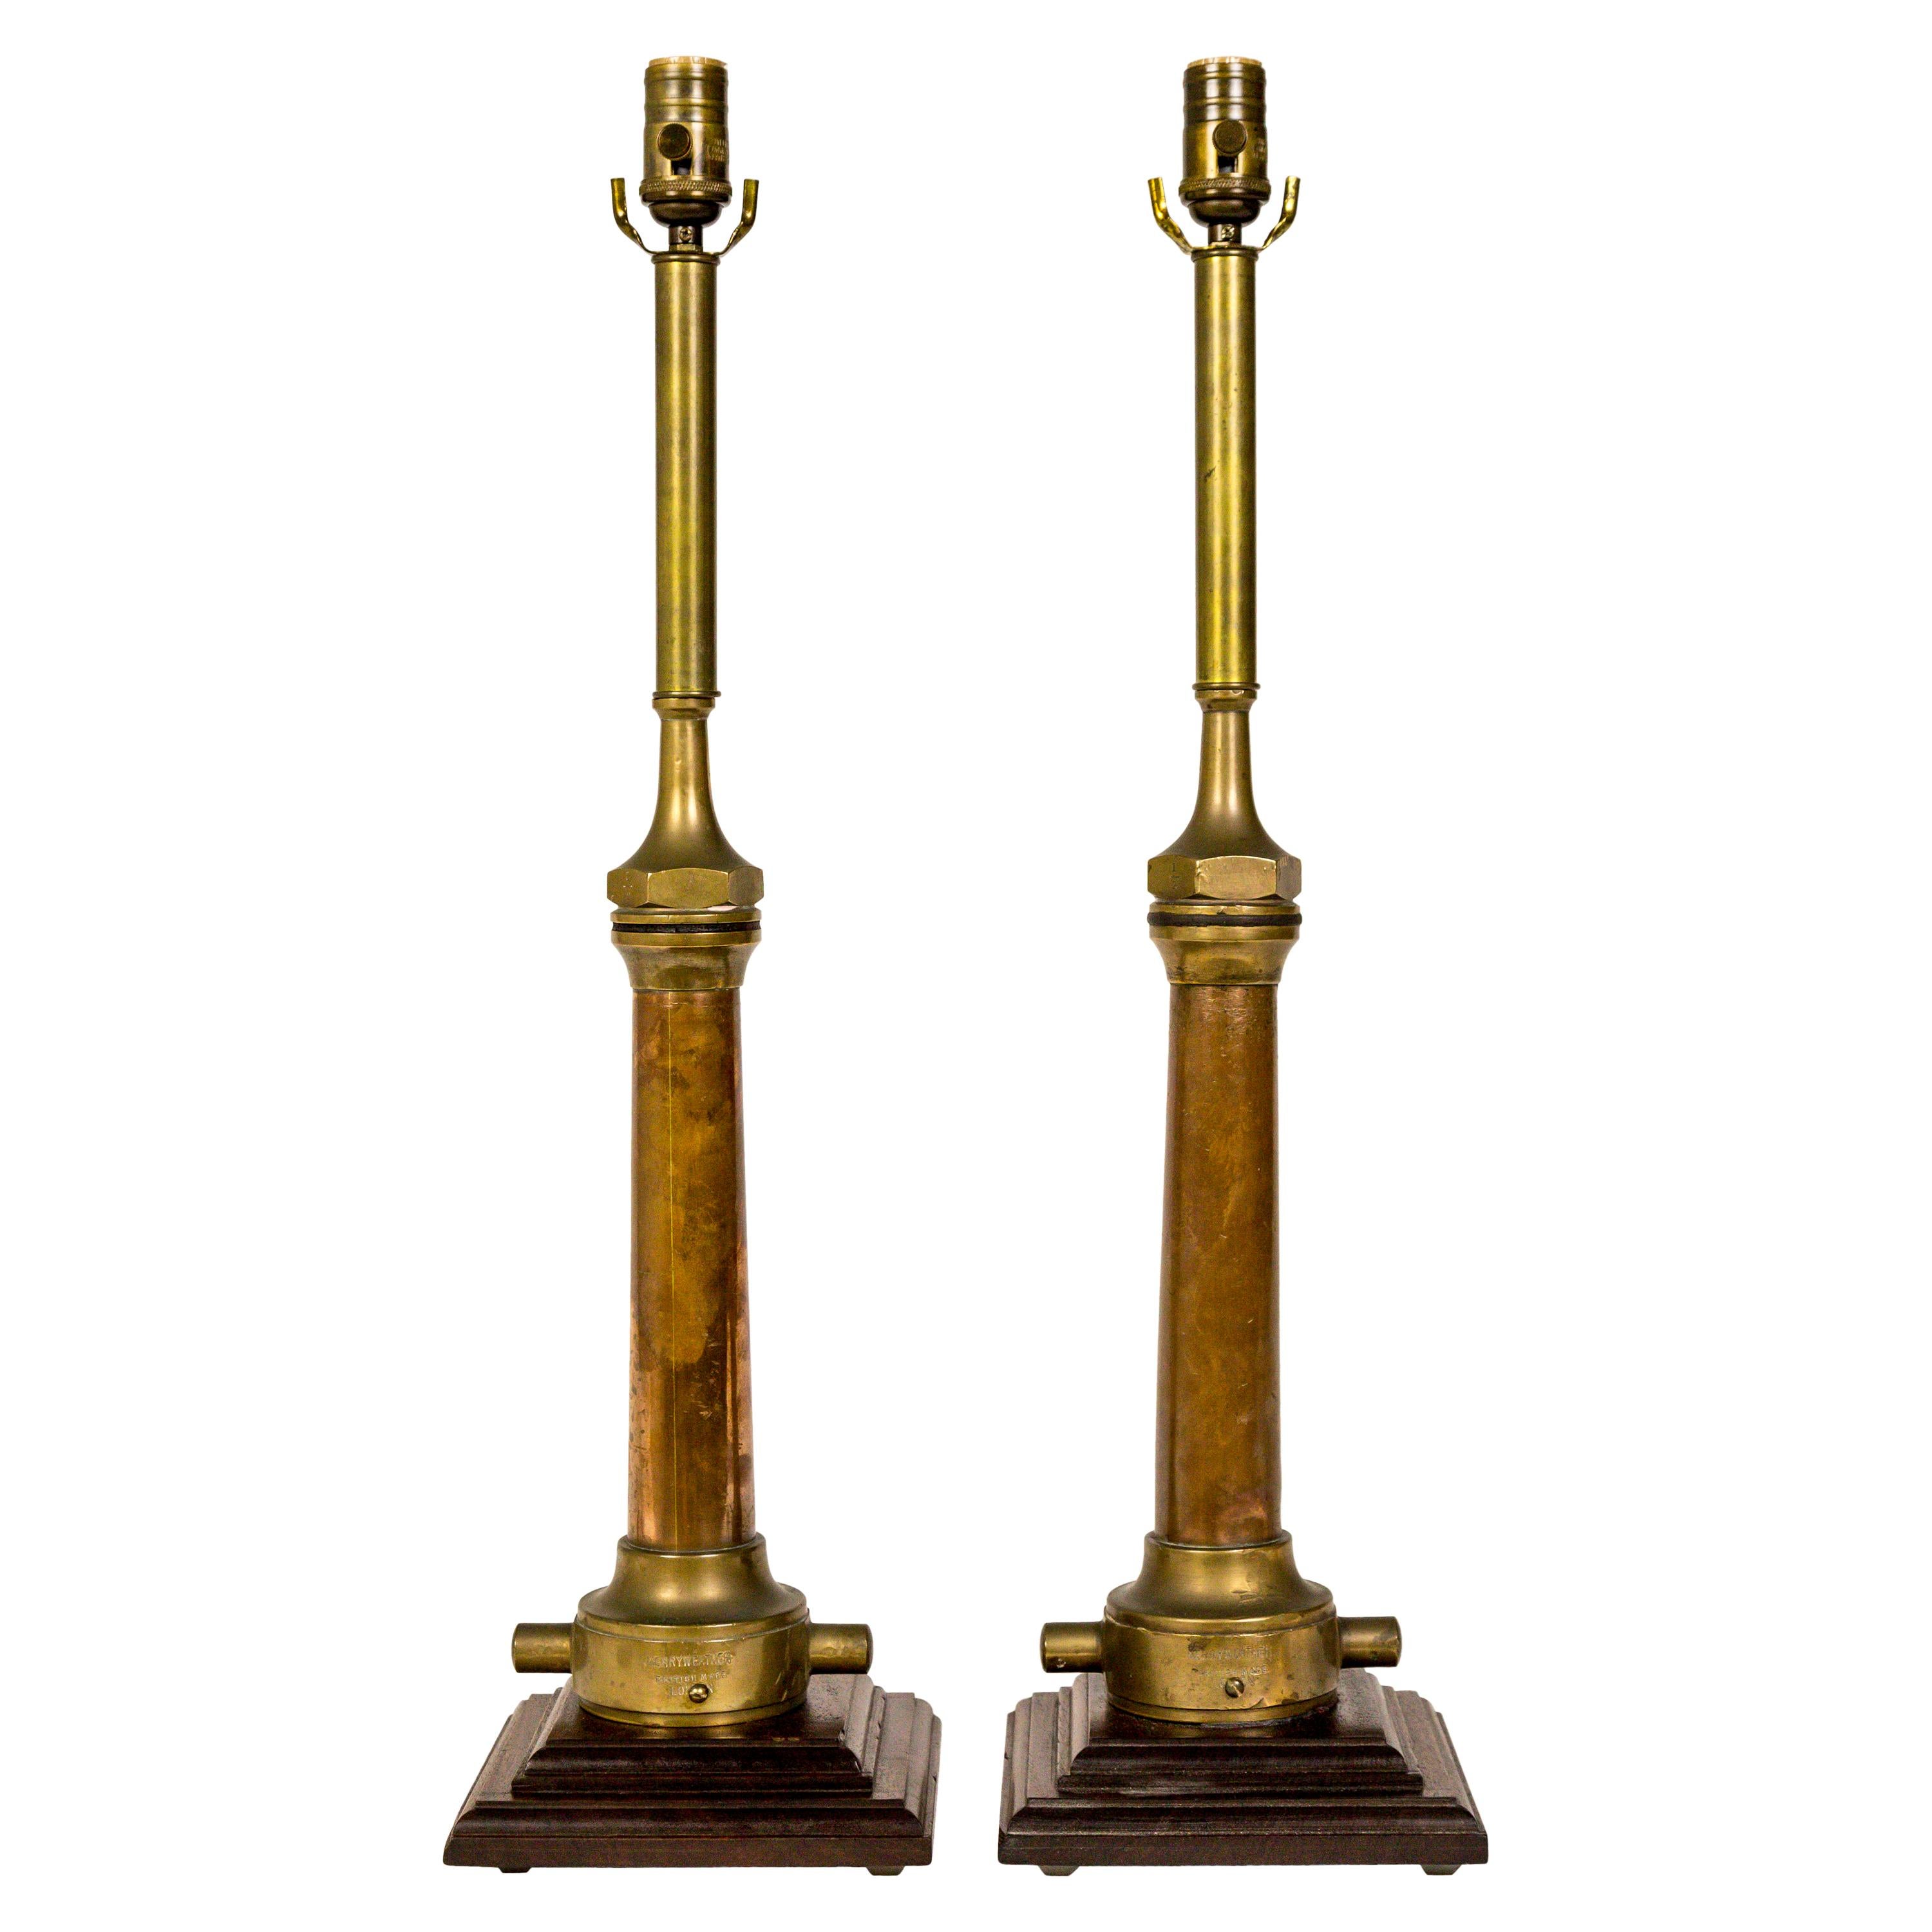 Copper & Brass Victorian Fire Hose Nozzle Lamps (pair)